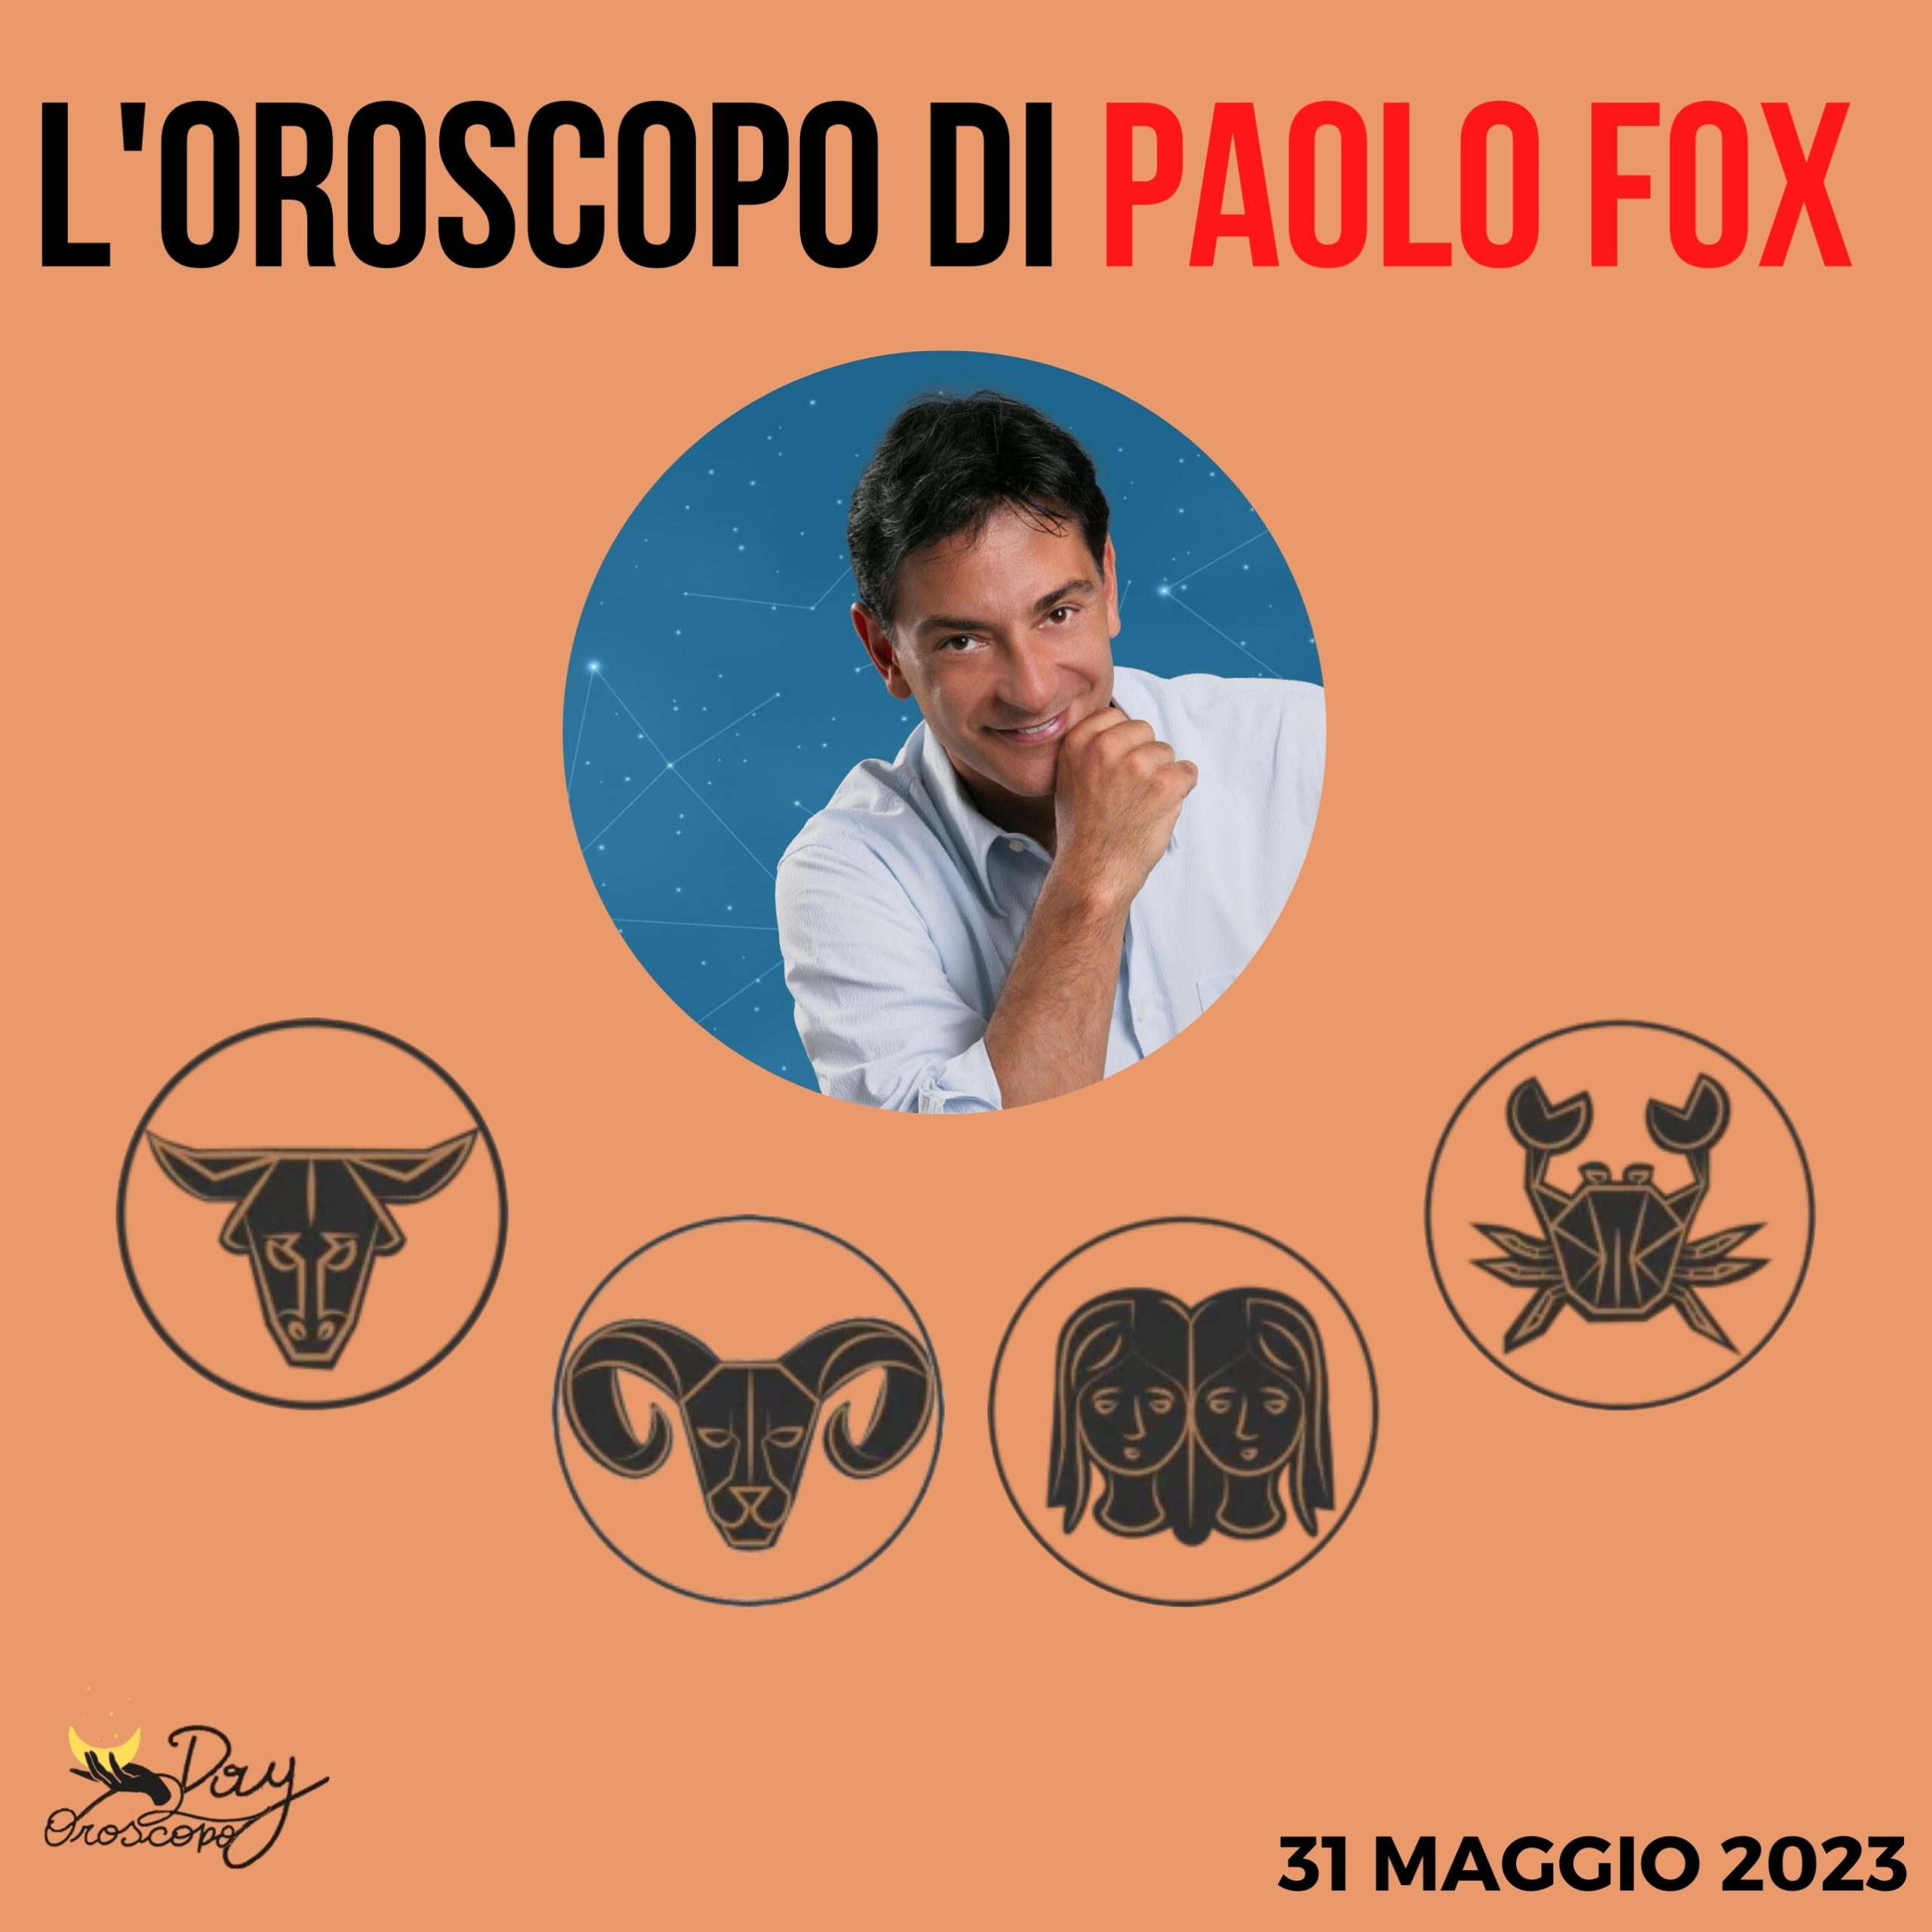 Oroscopo oggi domani Paolo Fox 31 maggio Toro Ariete Gemelli Cancro